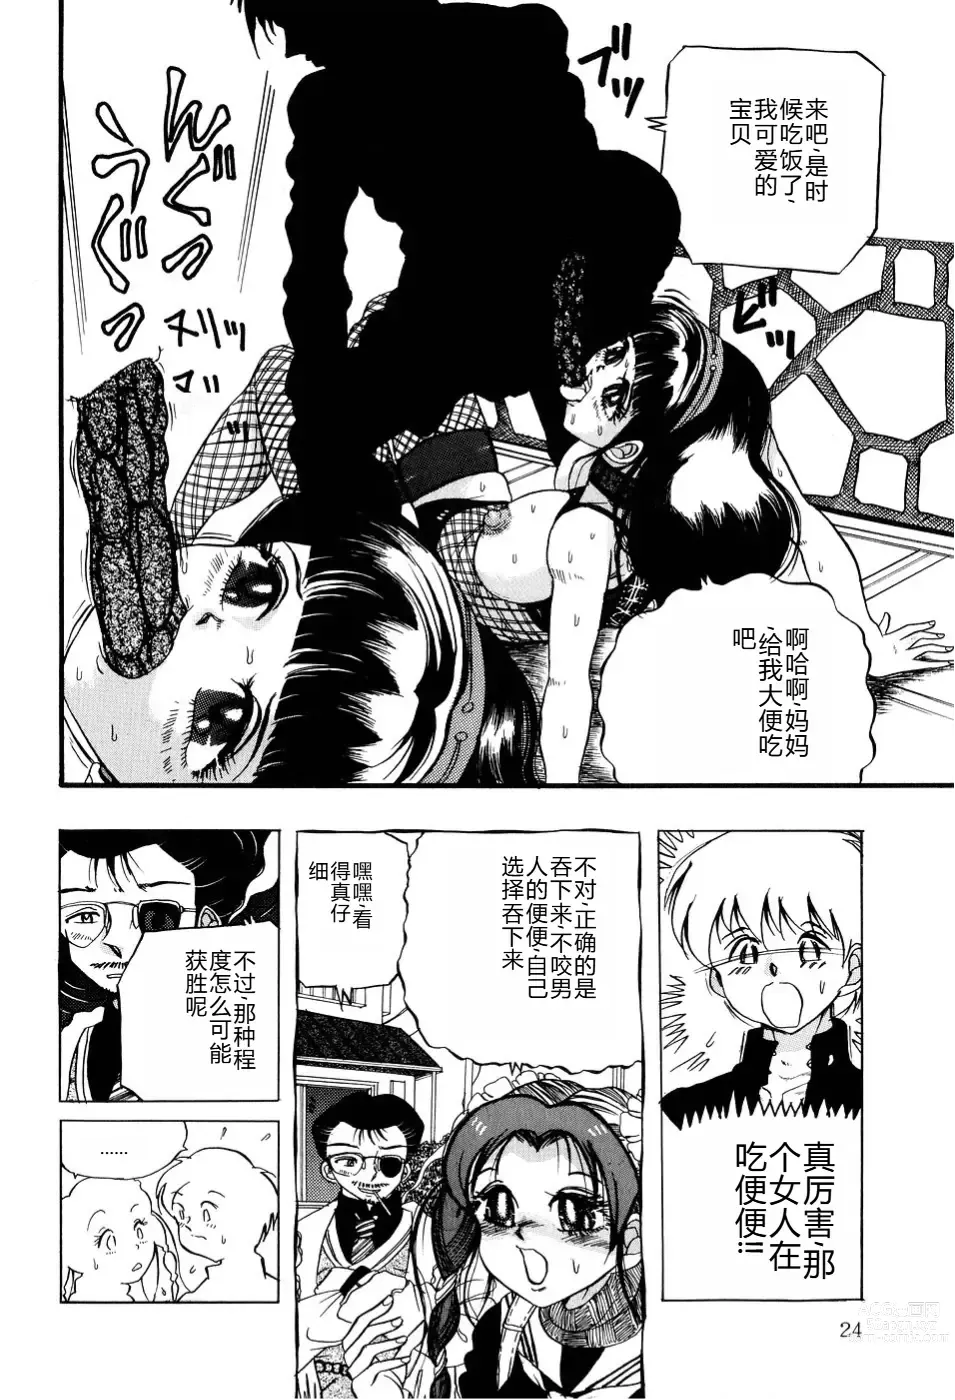 Page 25 of manga Kusozume Benkihime